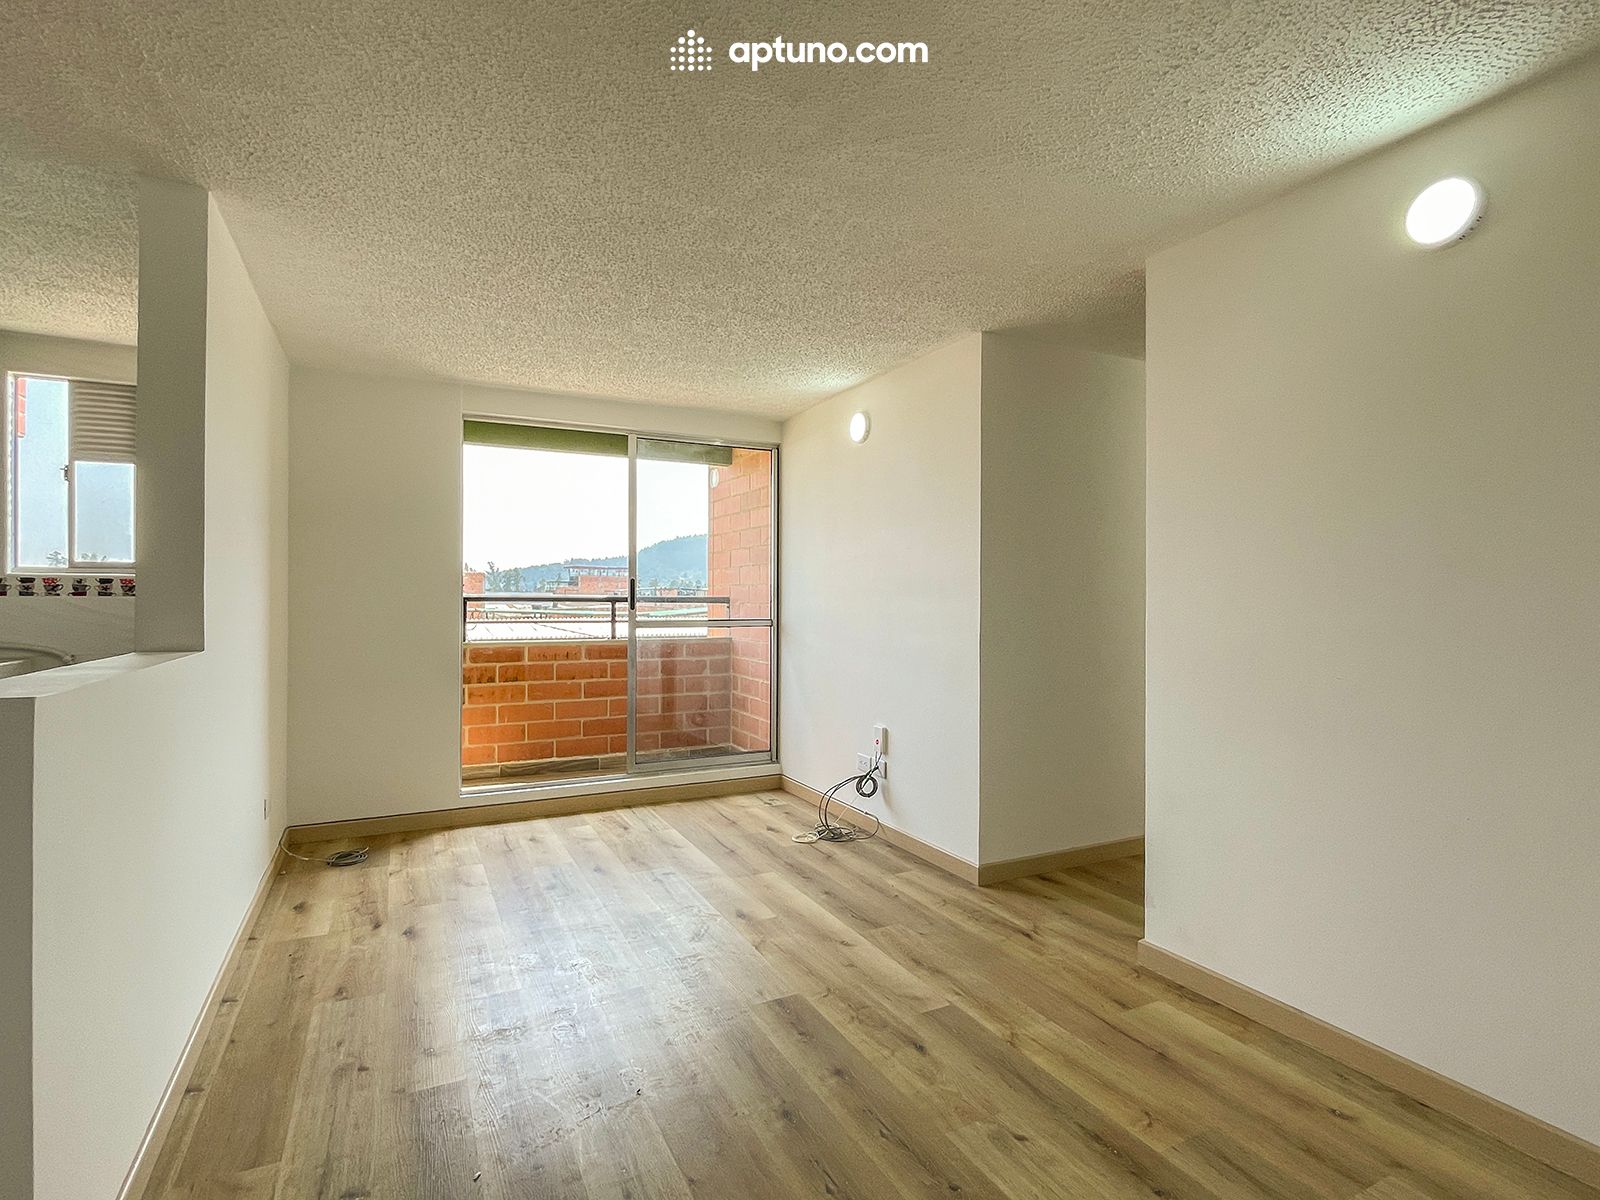 Apartamento en arriendo Madrid 57 m² - $ 900.000,00